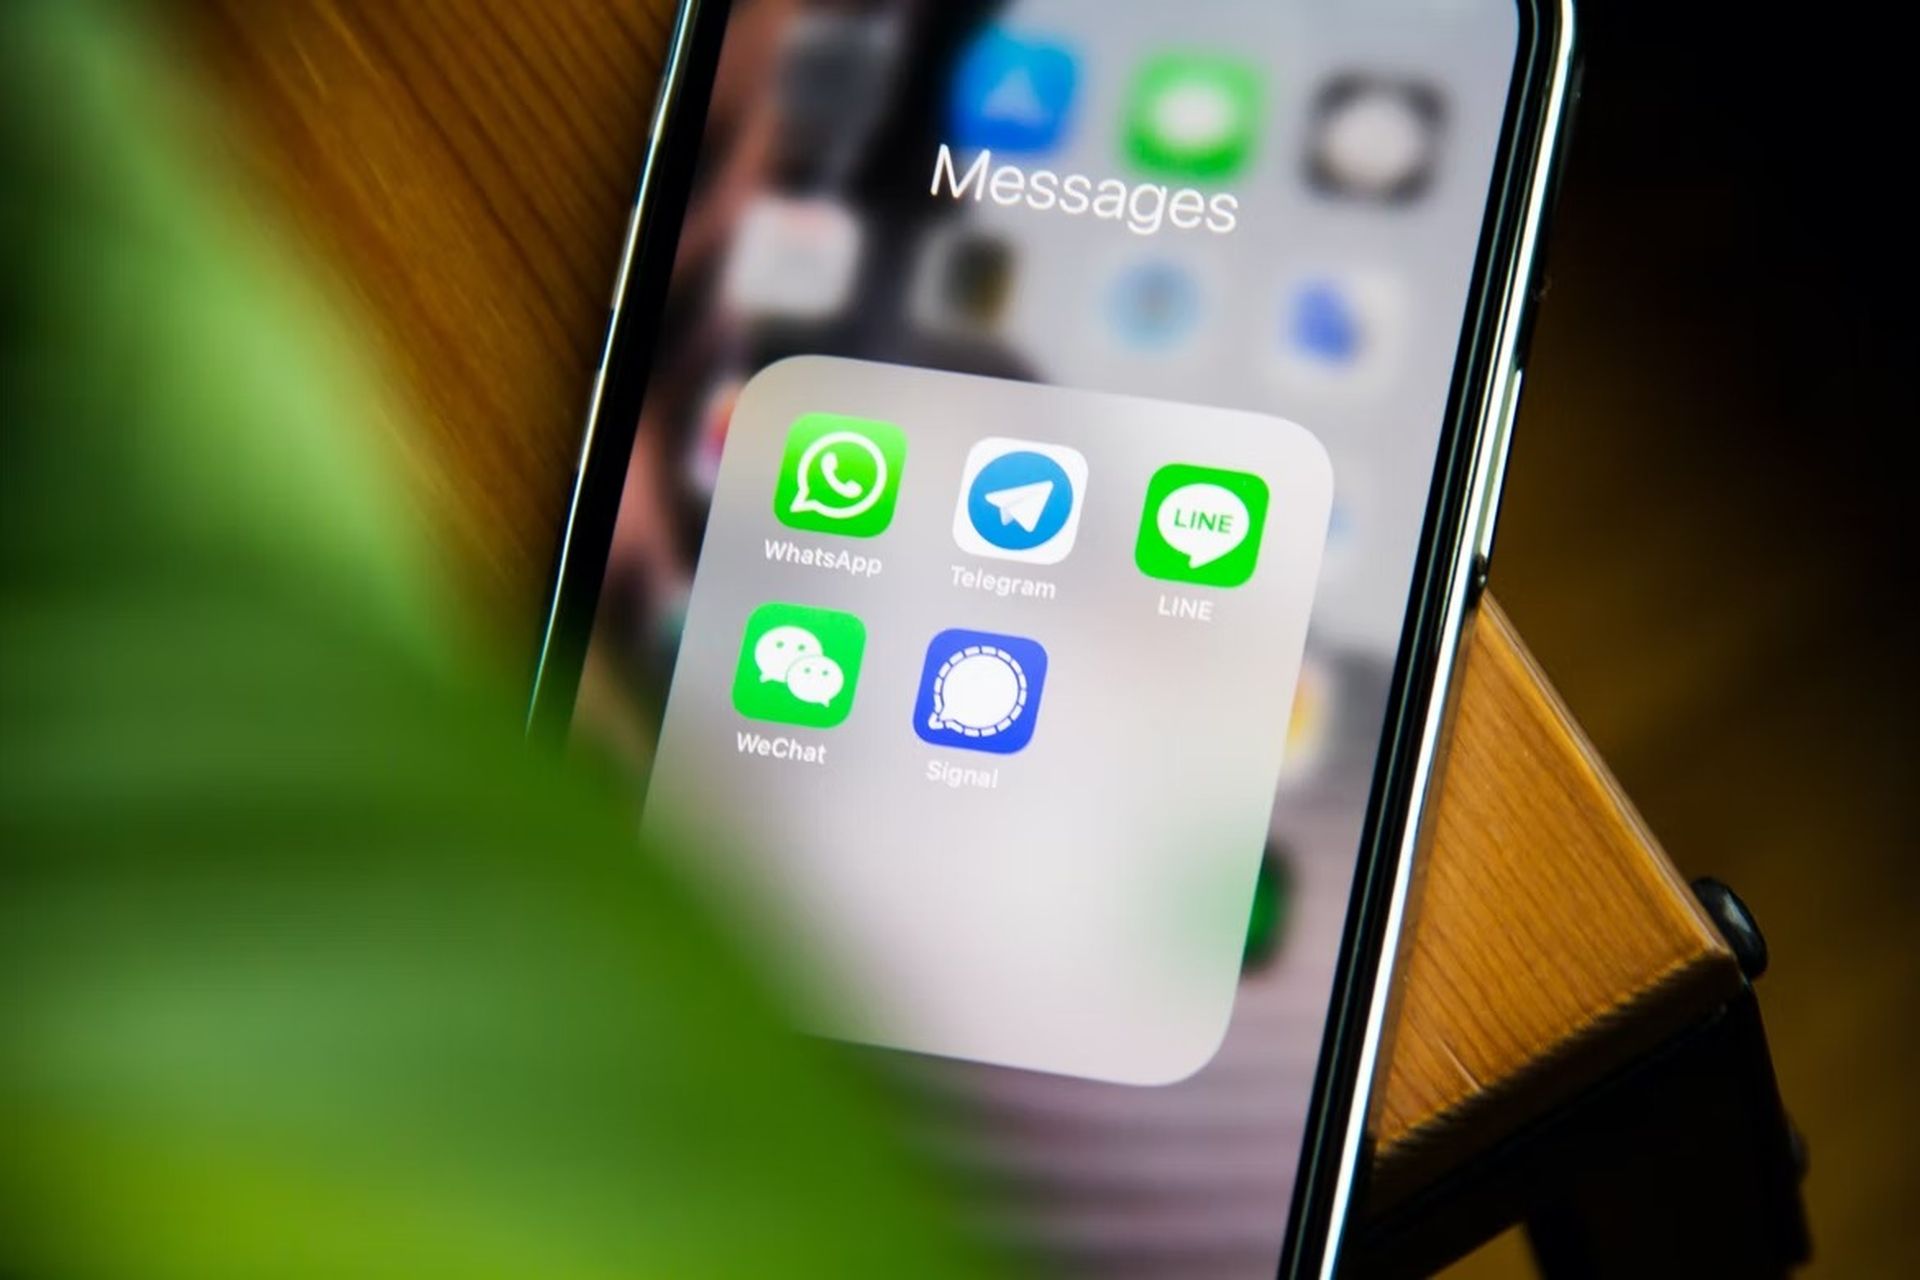 WhatsApp mettra fin à la prise en charge d'iOS 10 et iOS 11 d'ici la fin de 2022. Un nouvel avertissement découvert par WABetaInfo encourage les utilisateurs d'iPhone à mettre à jour leur logiciel pour continuer à utiliser WhatsApp après le 24 octobre.